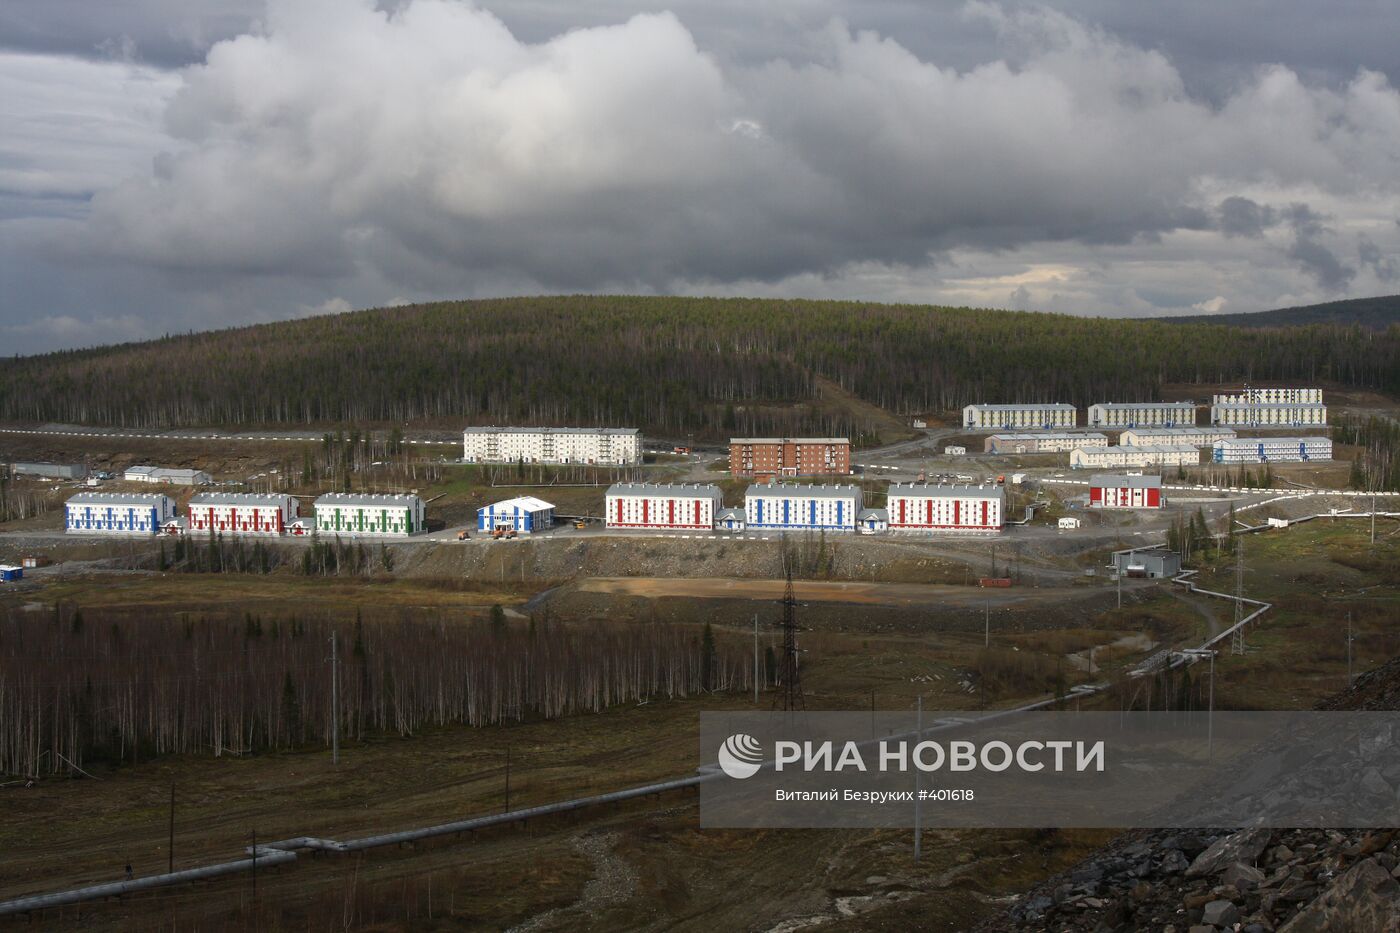 Еруда - поселок золотодобытчиков в Красноярском крае